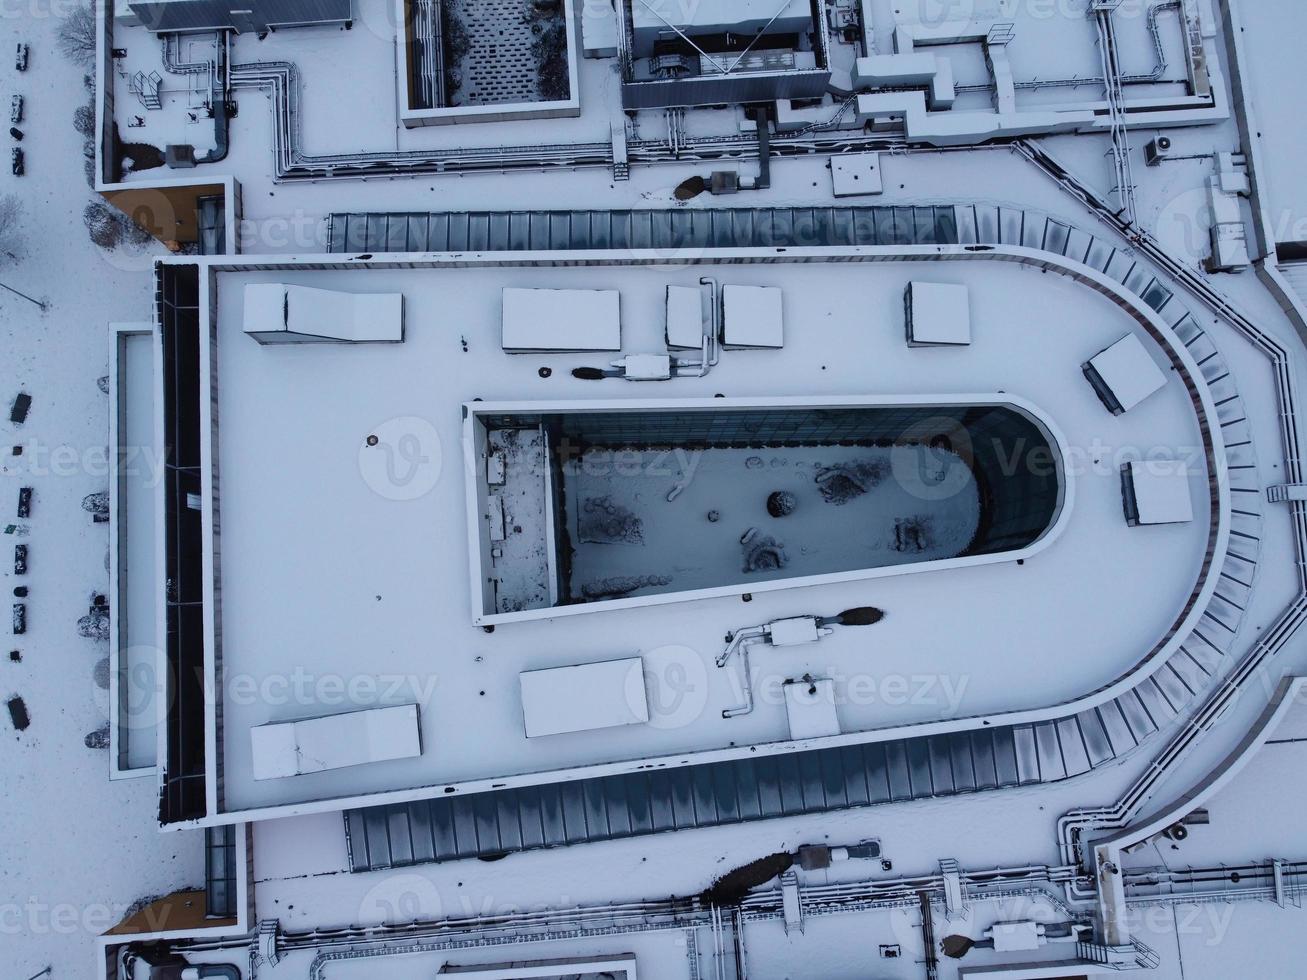 vista de ángulo alto del paisaje y el paisaje urbano de luton del norte cubierto de nieve, imágenes aéreas de la ciudad de luton del norte de inglaterra reino unido después de la caída de la nieve. la 1ra nevada de este invierno de 2022 foto